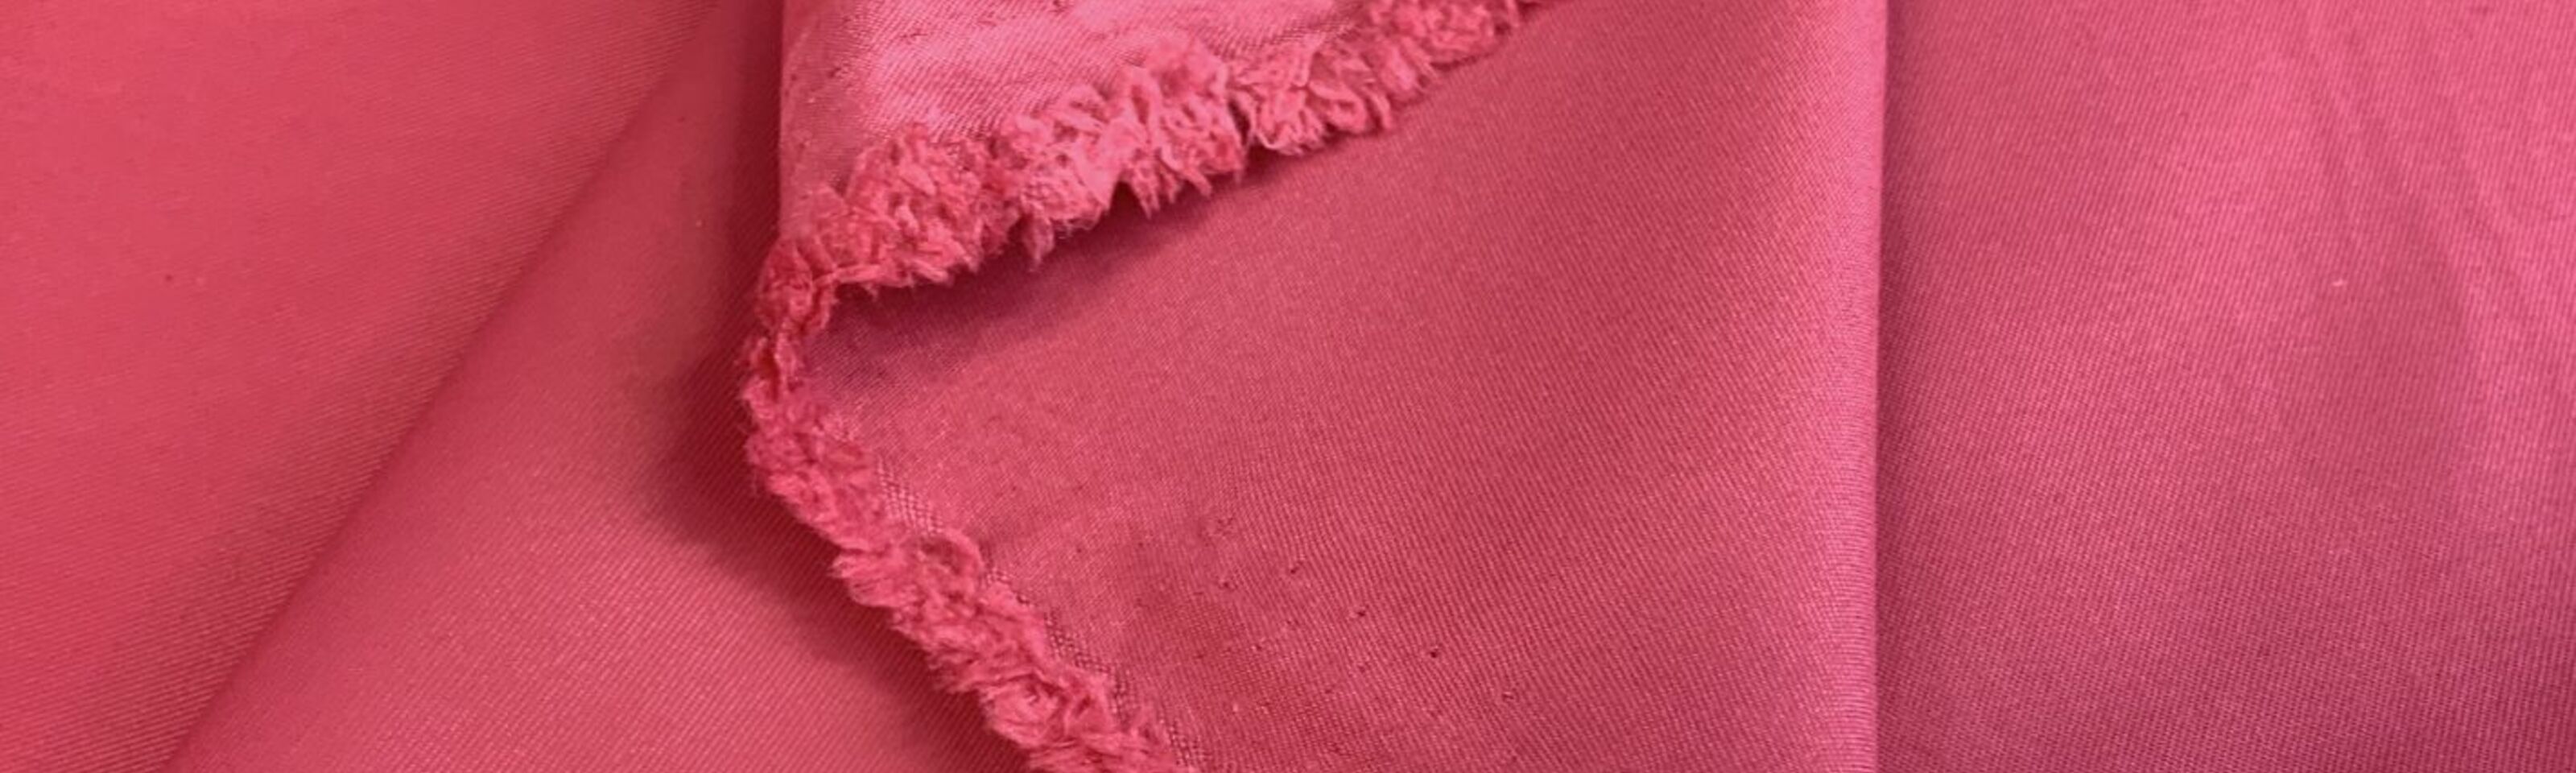 Sports Stuff- Pink -  Polyester- Nylon - Peachskin- Fabric - Jacket- Fabric - cu